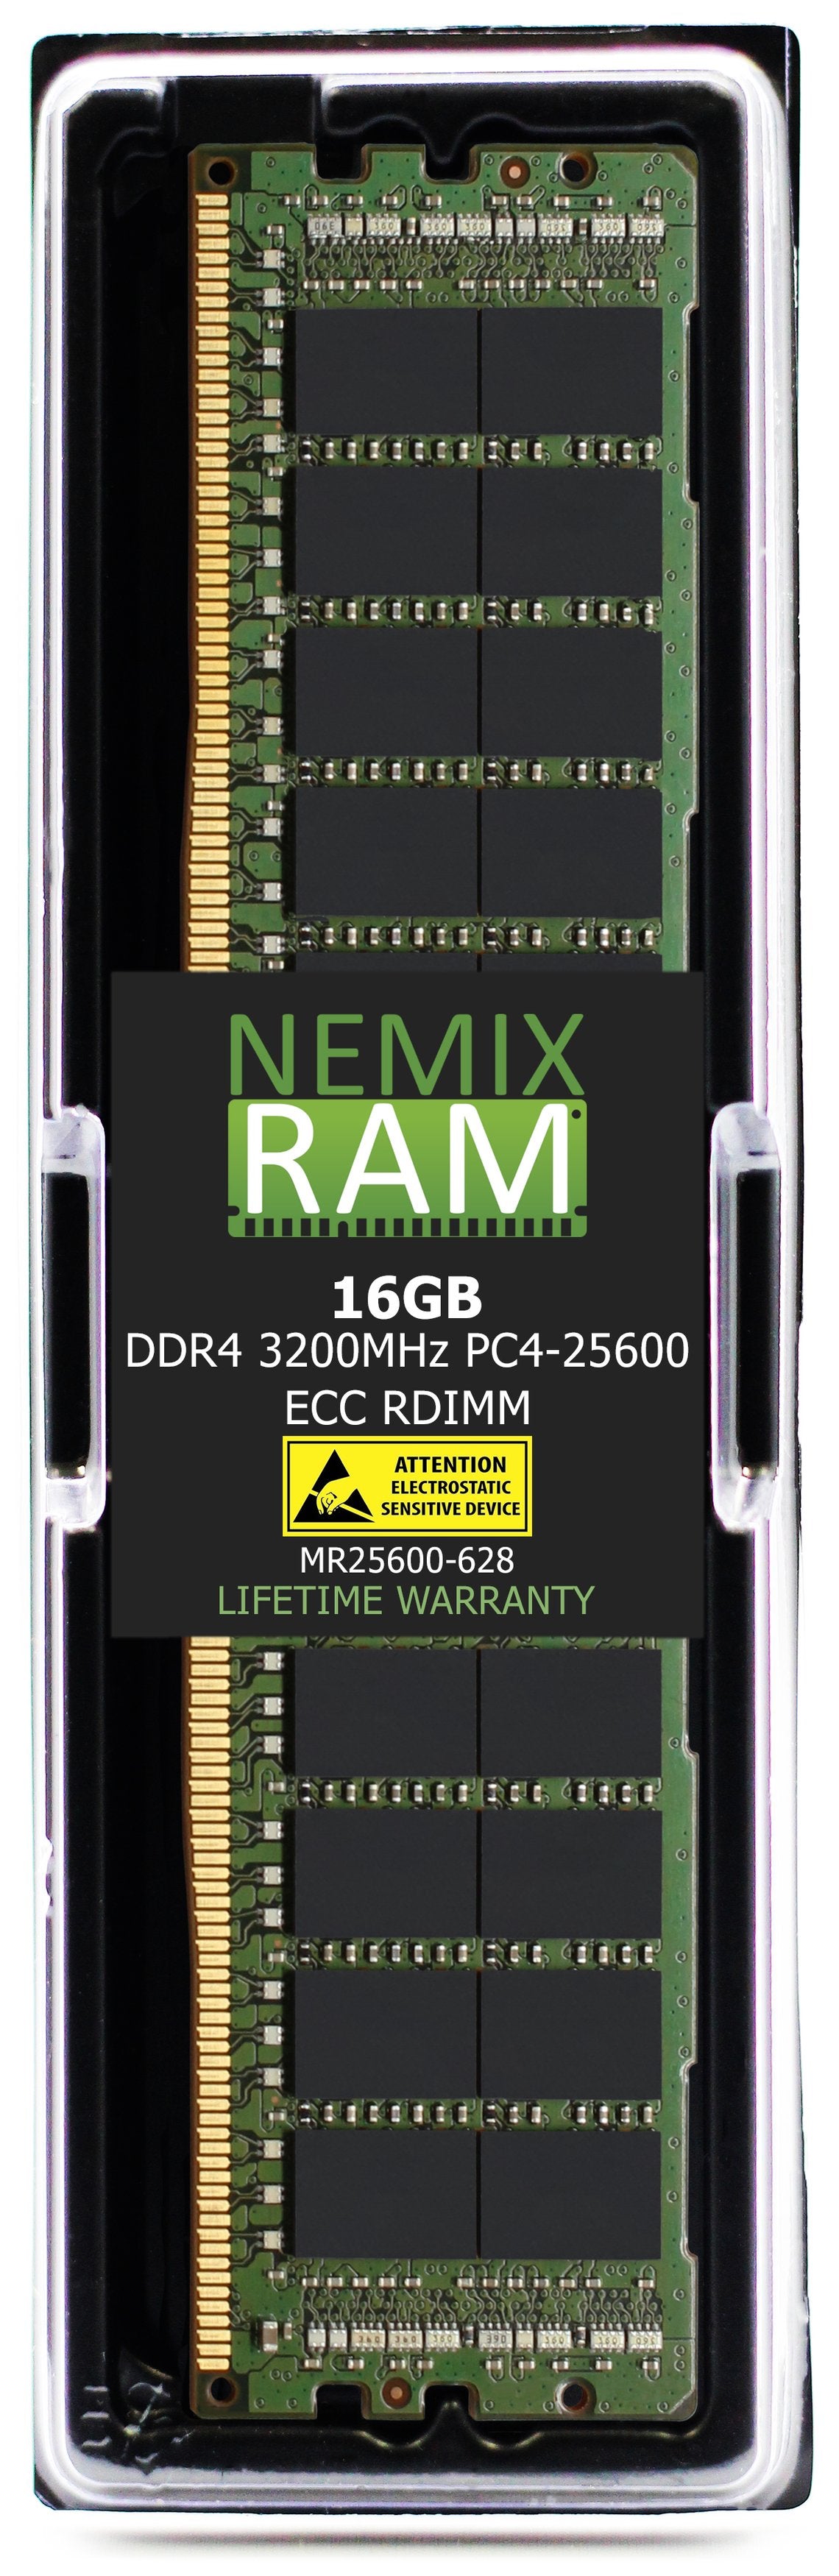 Hynix HMA82GR7CJR8N-XN 16G DDR4 3200MHZ PC4-25600 RDIMM Compatible Memory Module